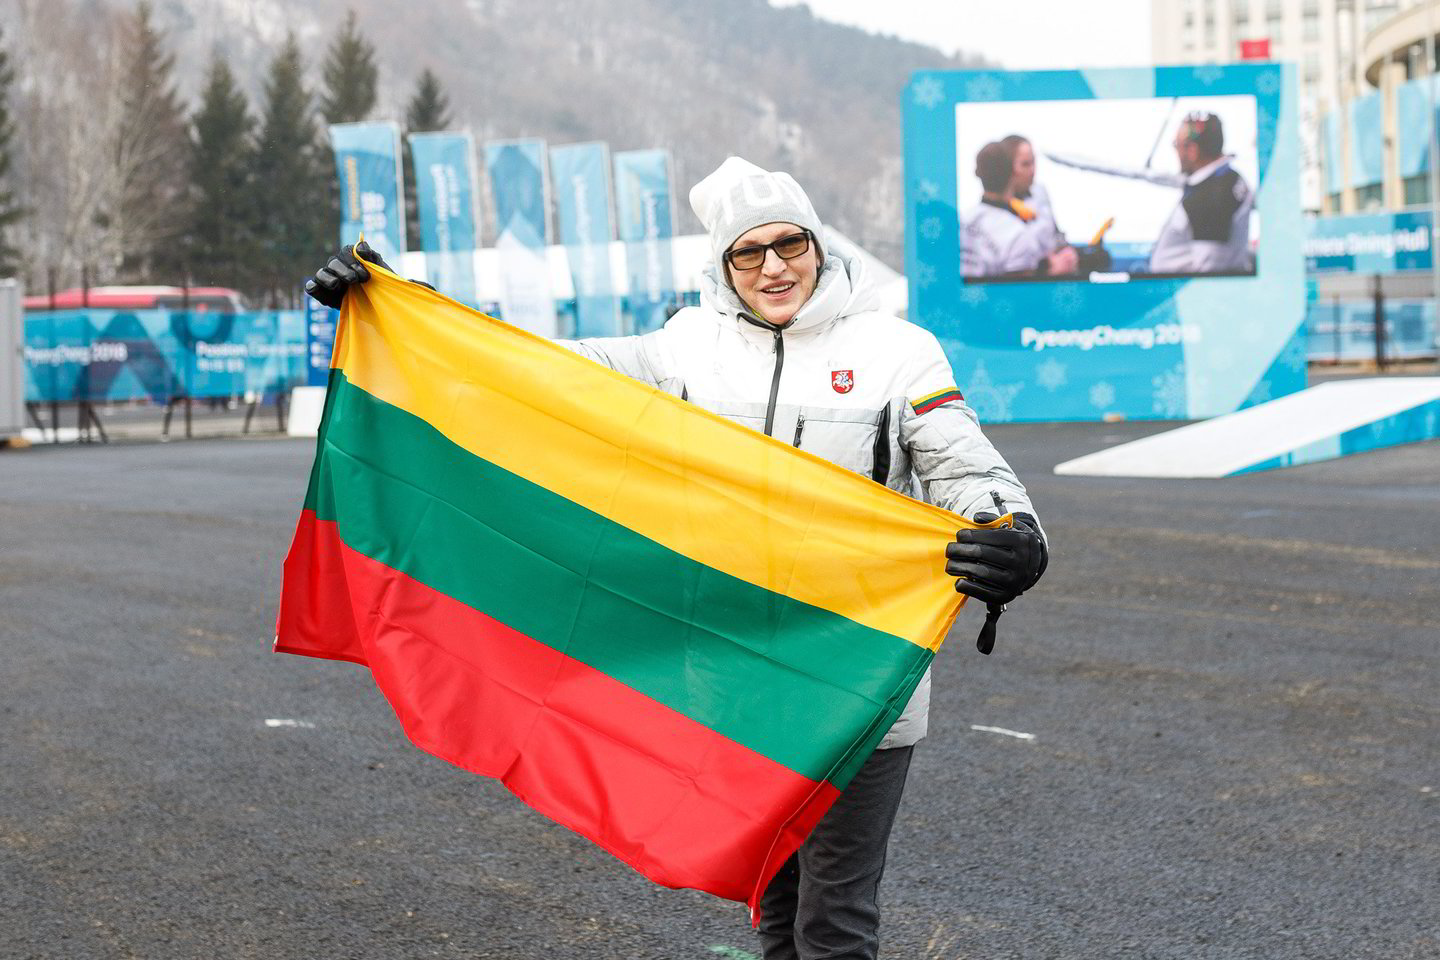  Lietuvos žiemos olimpinės rinktinės siela vadinama V.Vencienė sulaukė dovanos iš prezidentės.<br> V.Dranginio nuotr.